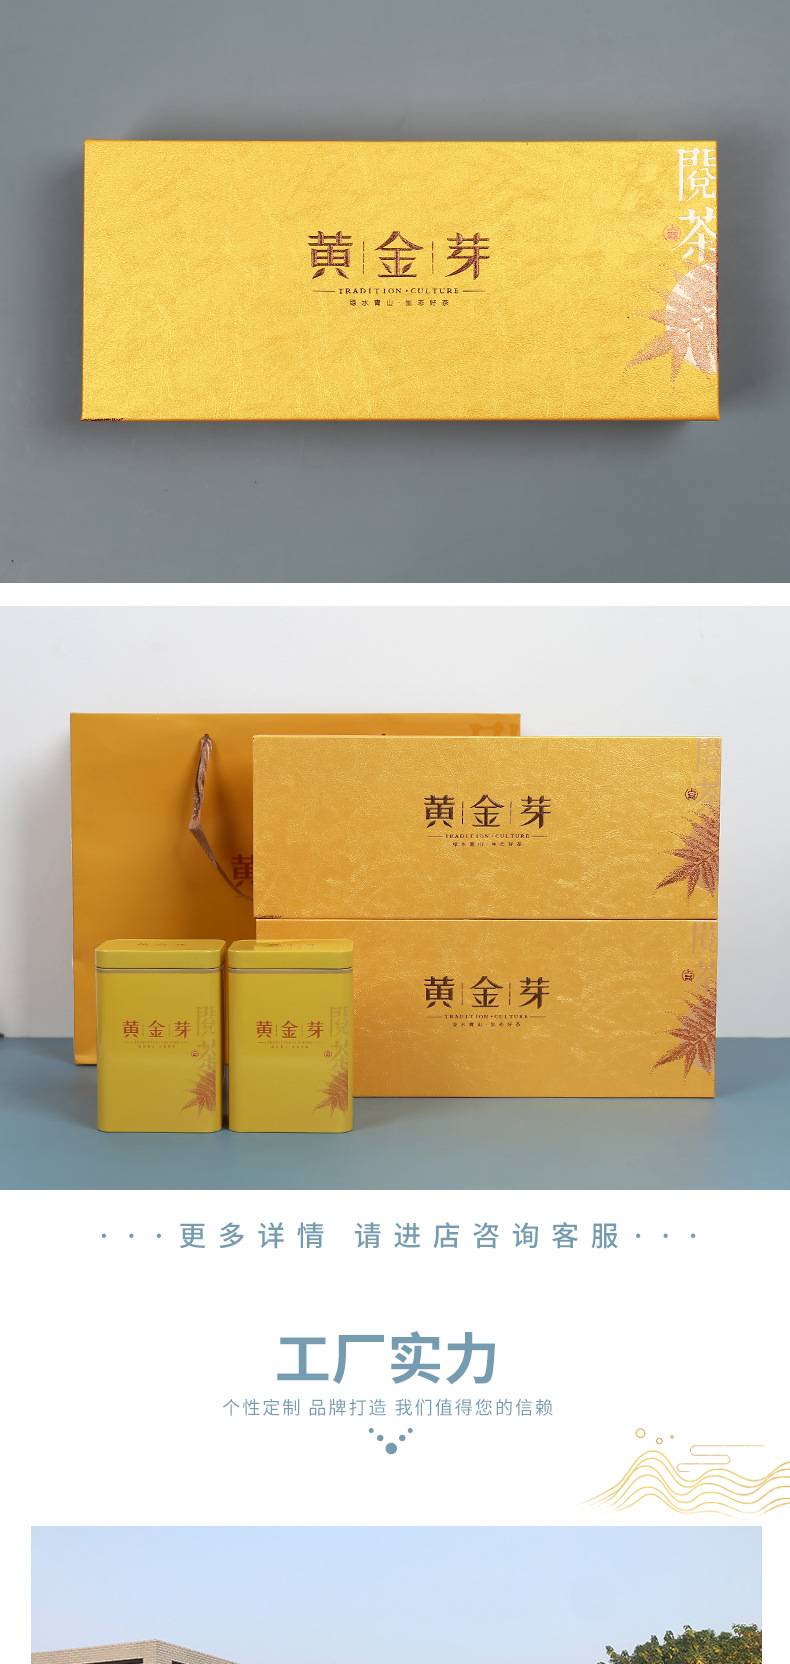 黄金芽专用金色茶叶礼盒包装盒250g茶叶铁罐分装空礼盒茶叶罐批发